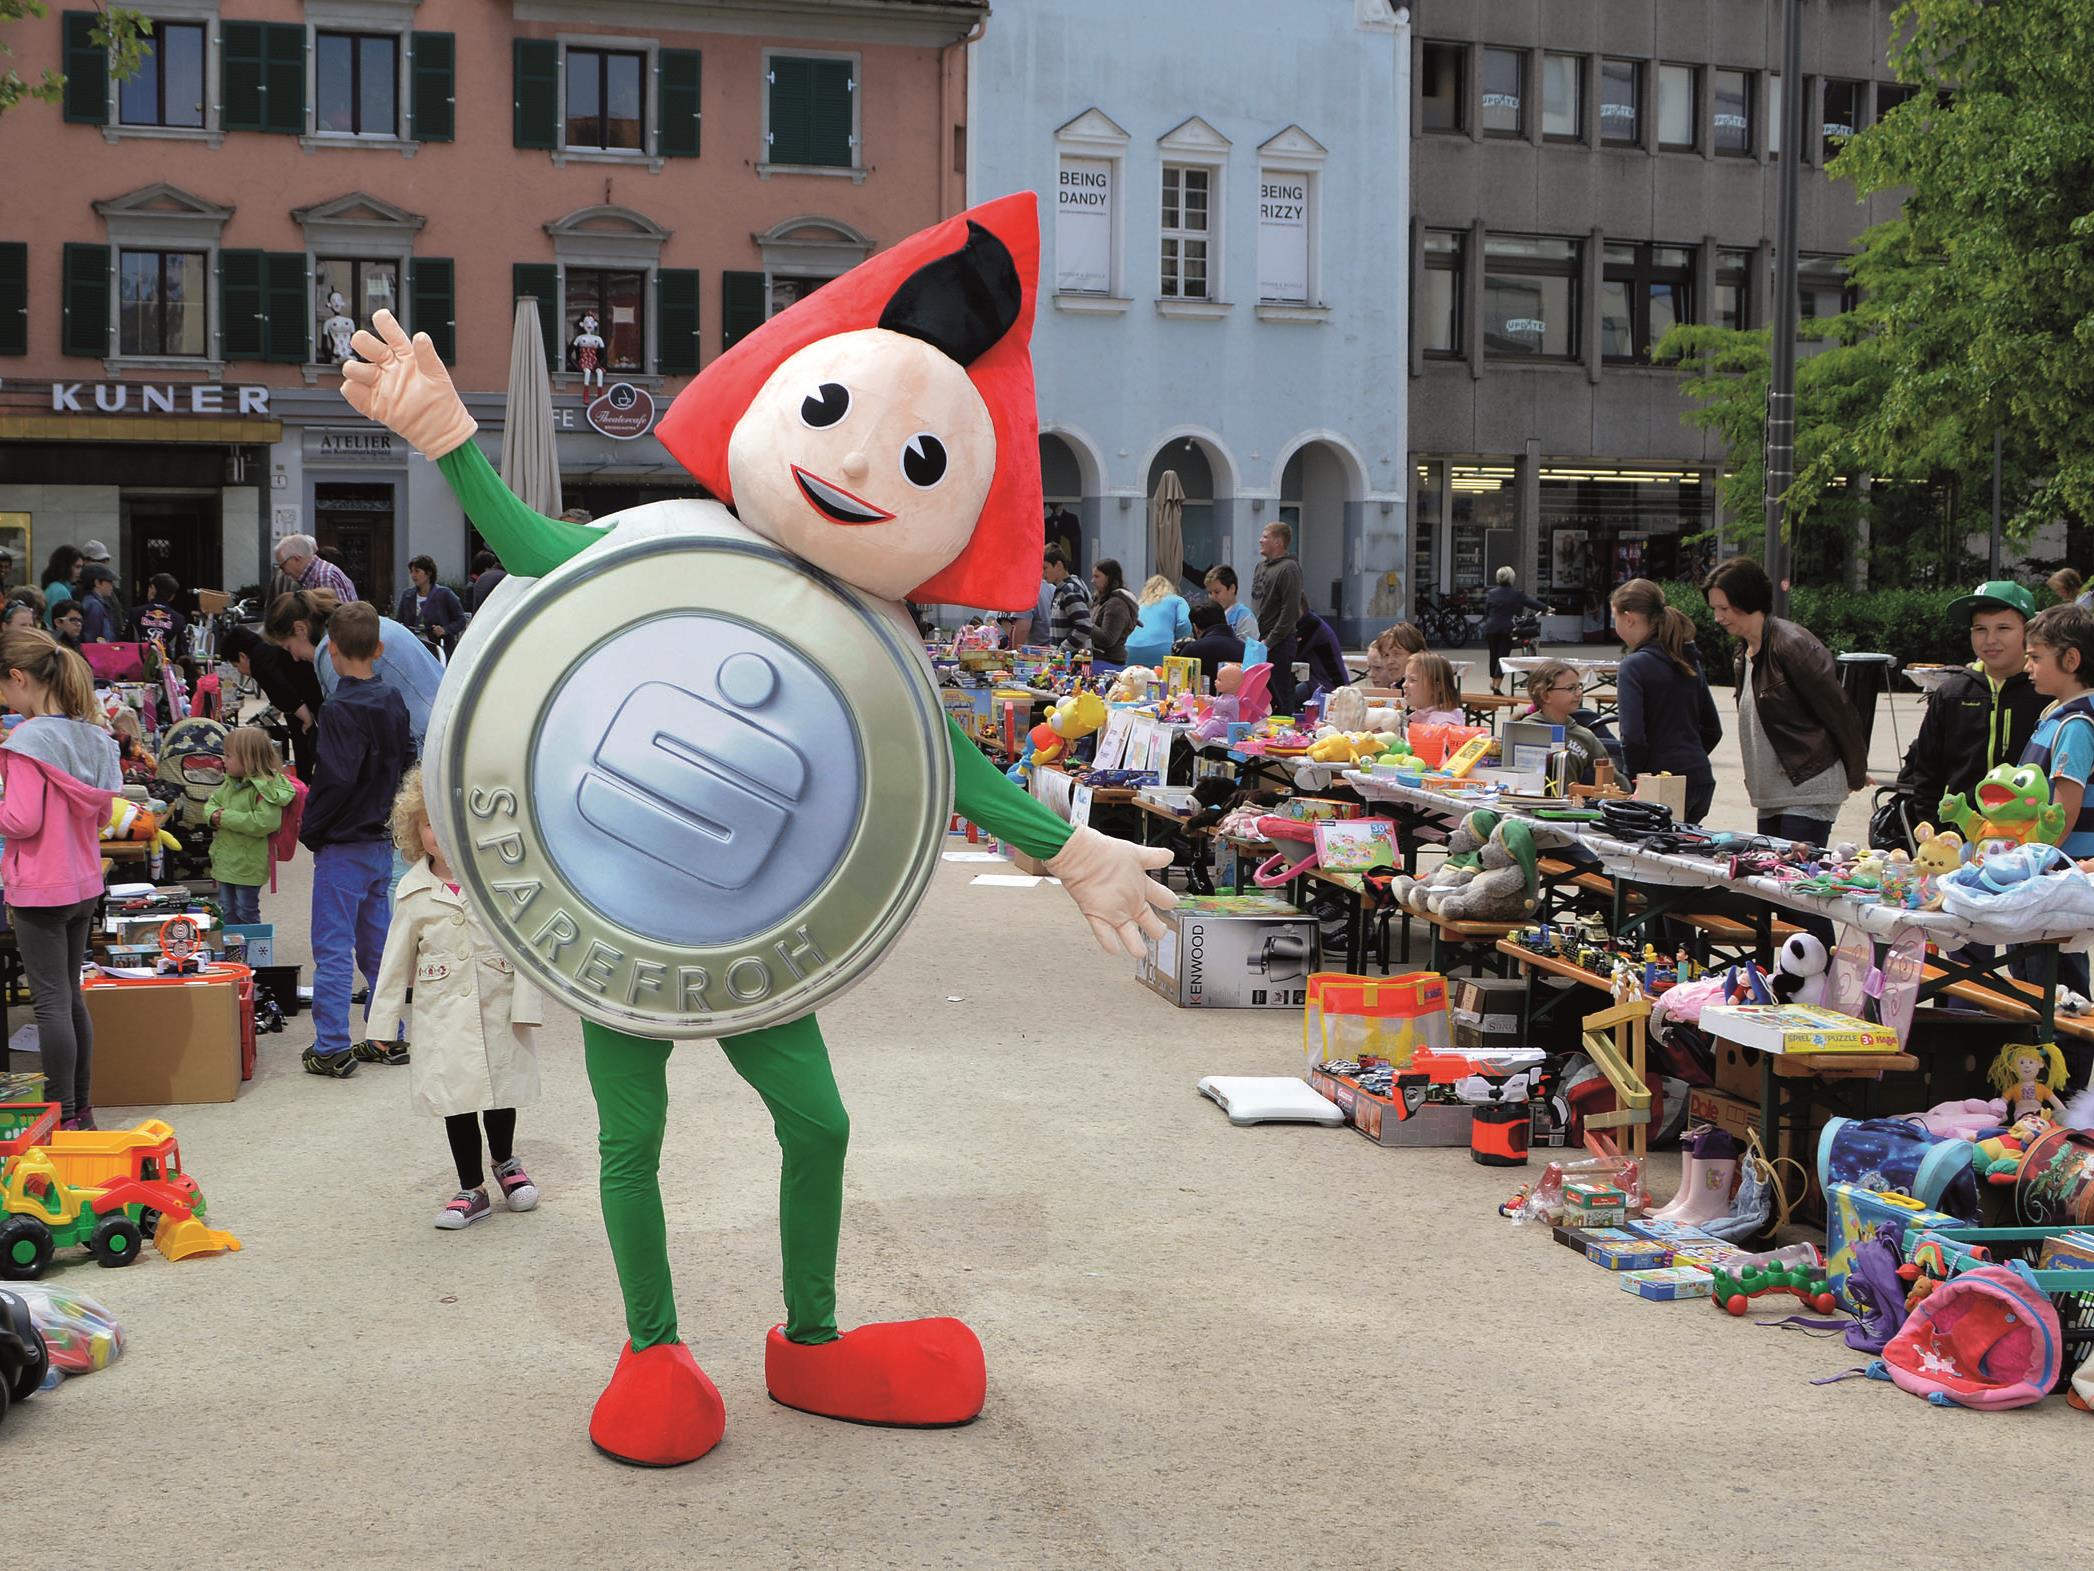 Schnell anmelden zum Sparefroh Spielzeugflohmarkt am 11.09.2016 in Bregenz!